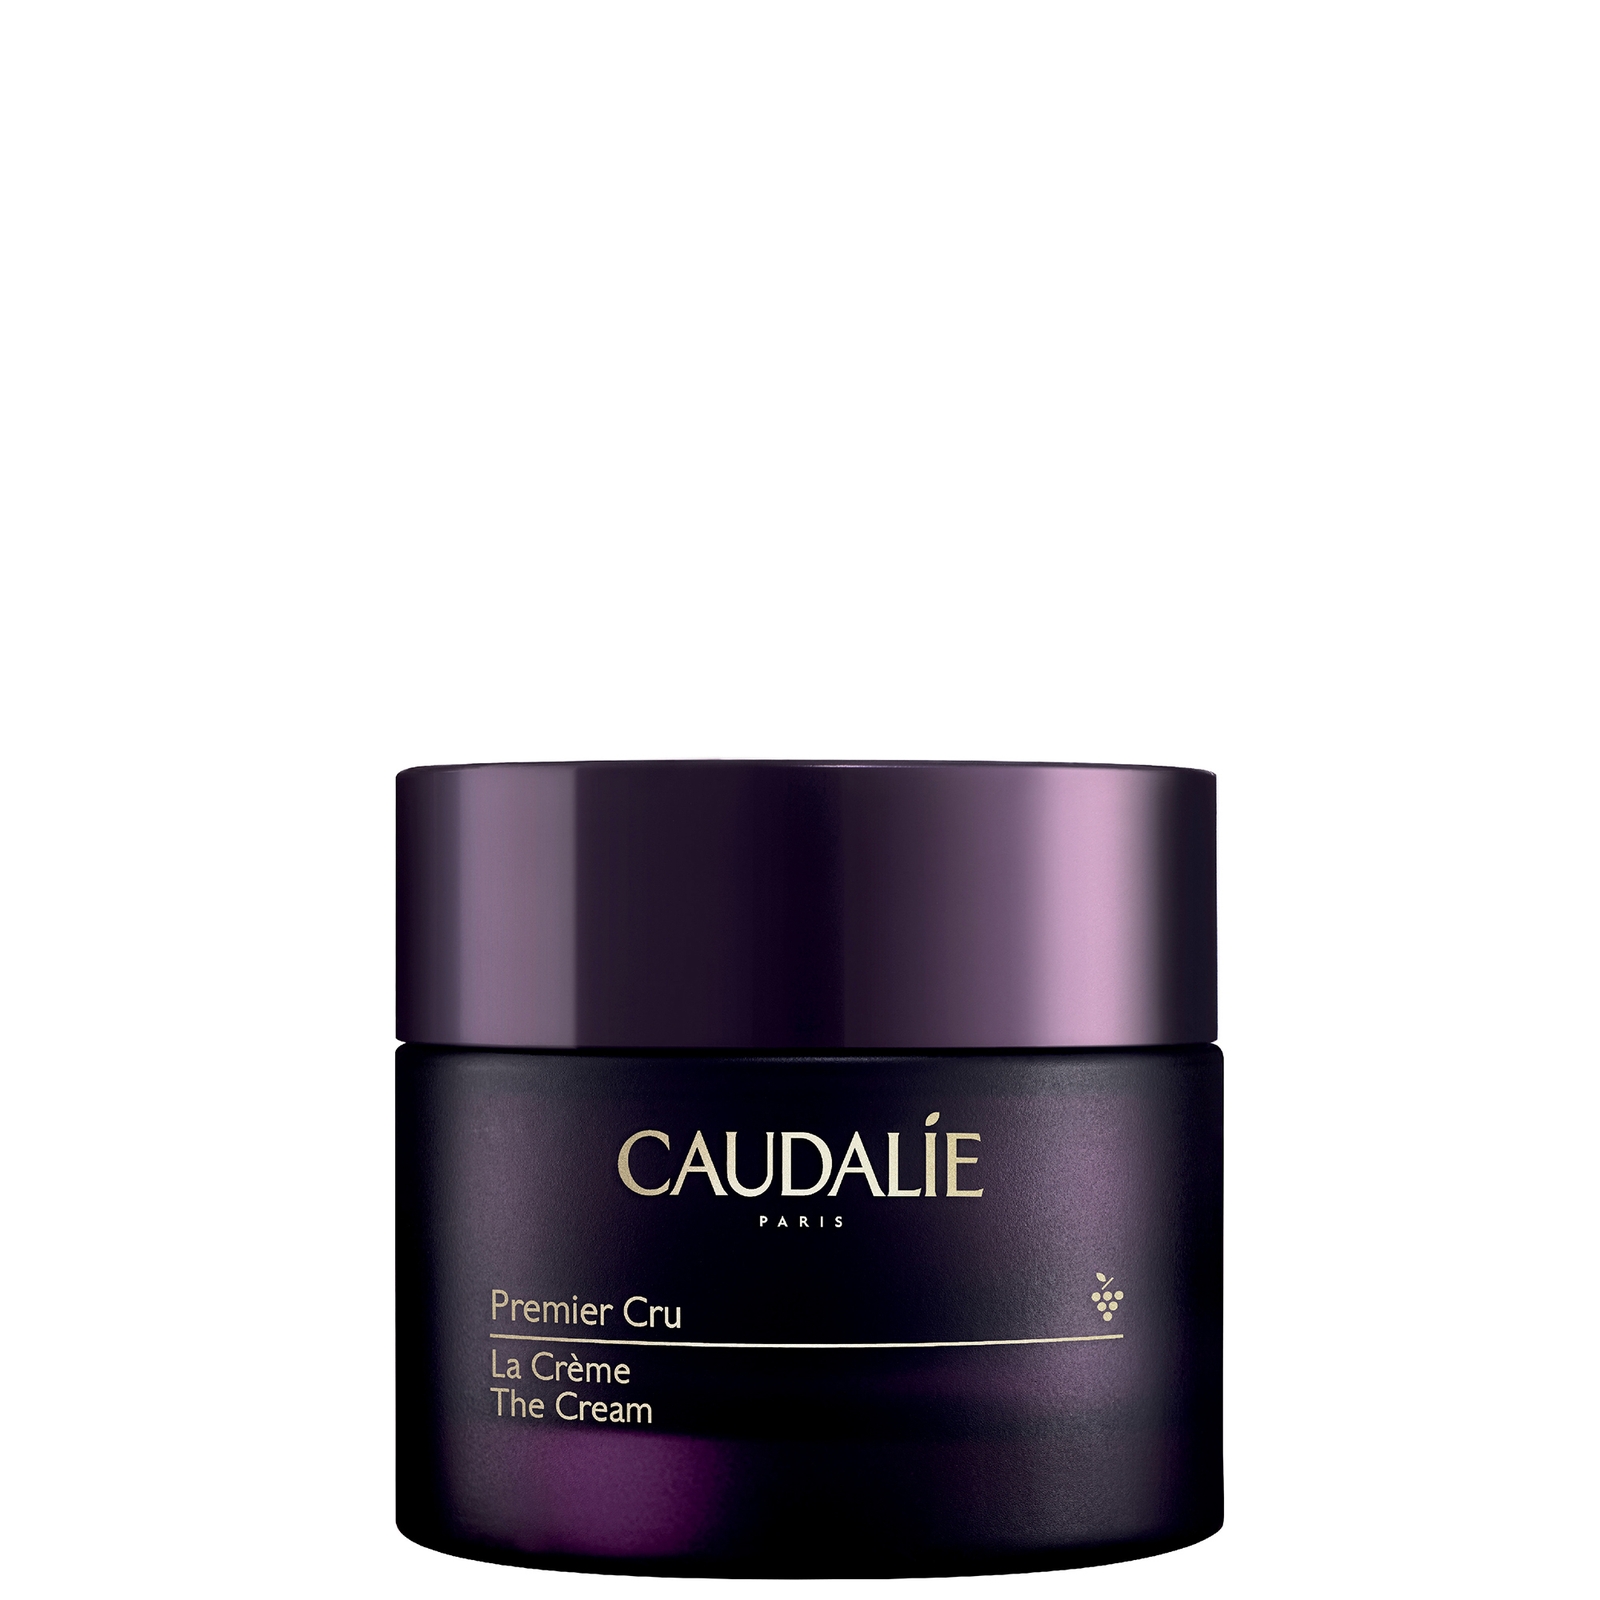 Image of Caudalie Premier Cru Anti-Aging Cream Moisturiser 50ml